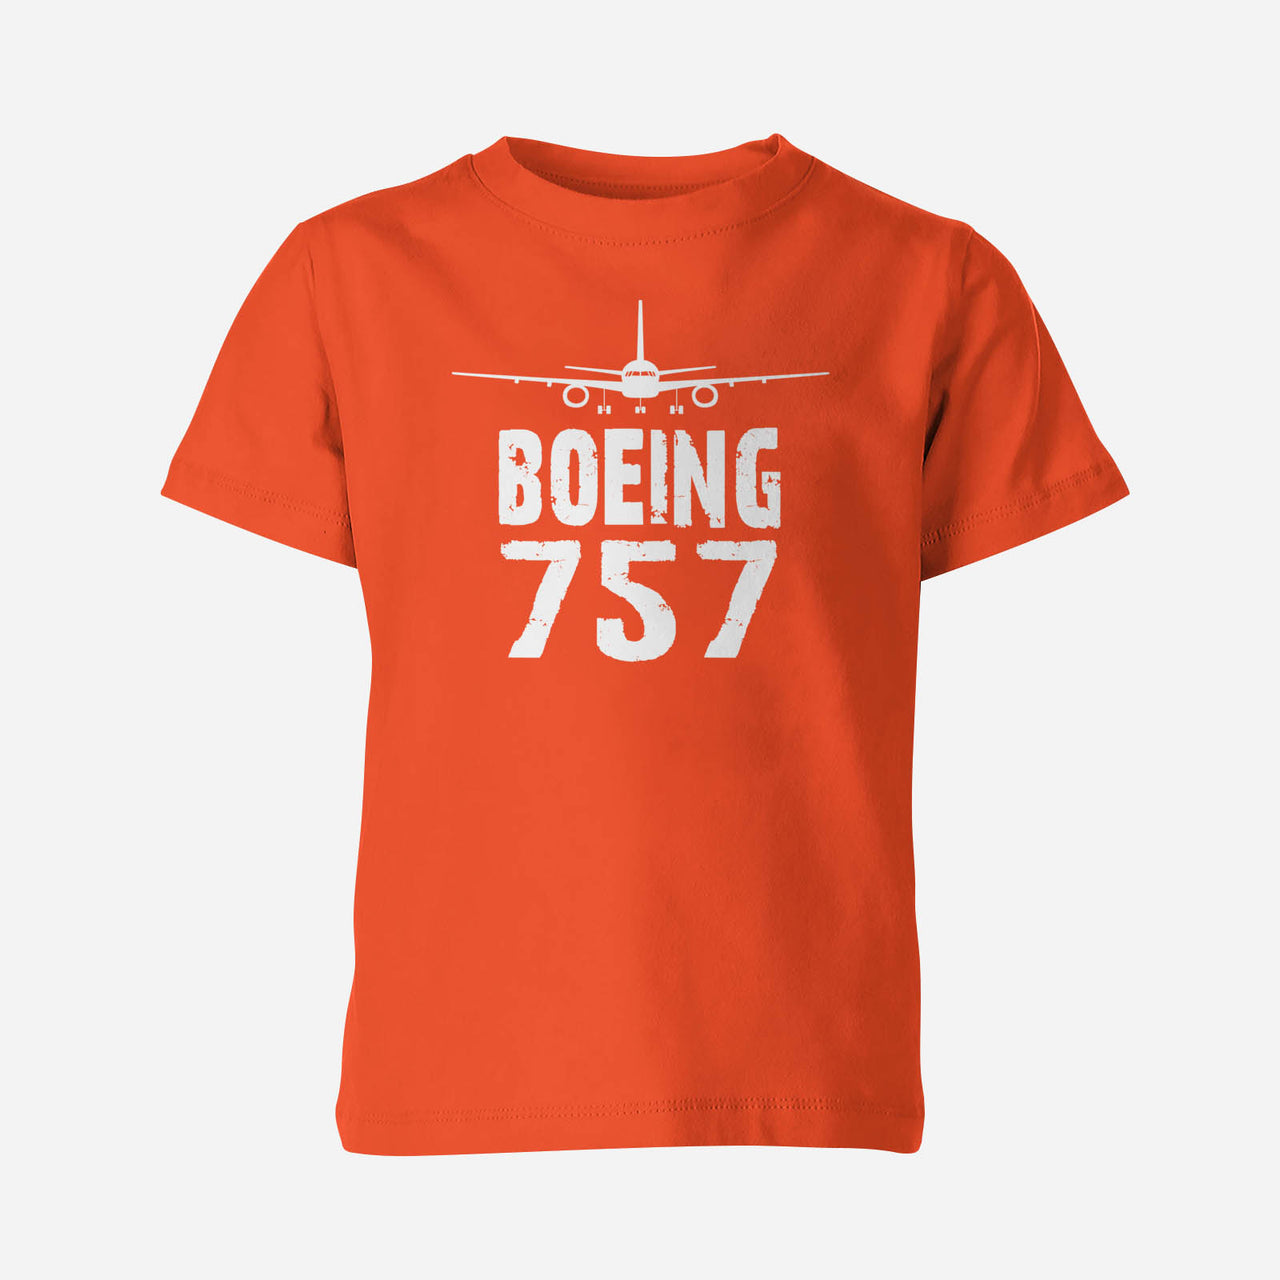 Boeing 757 & Plane Designed Children T-Shirts